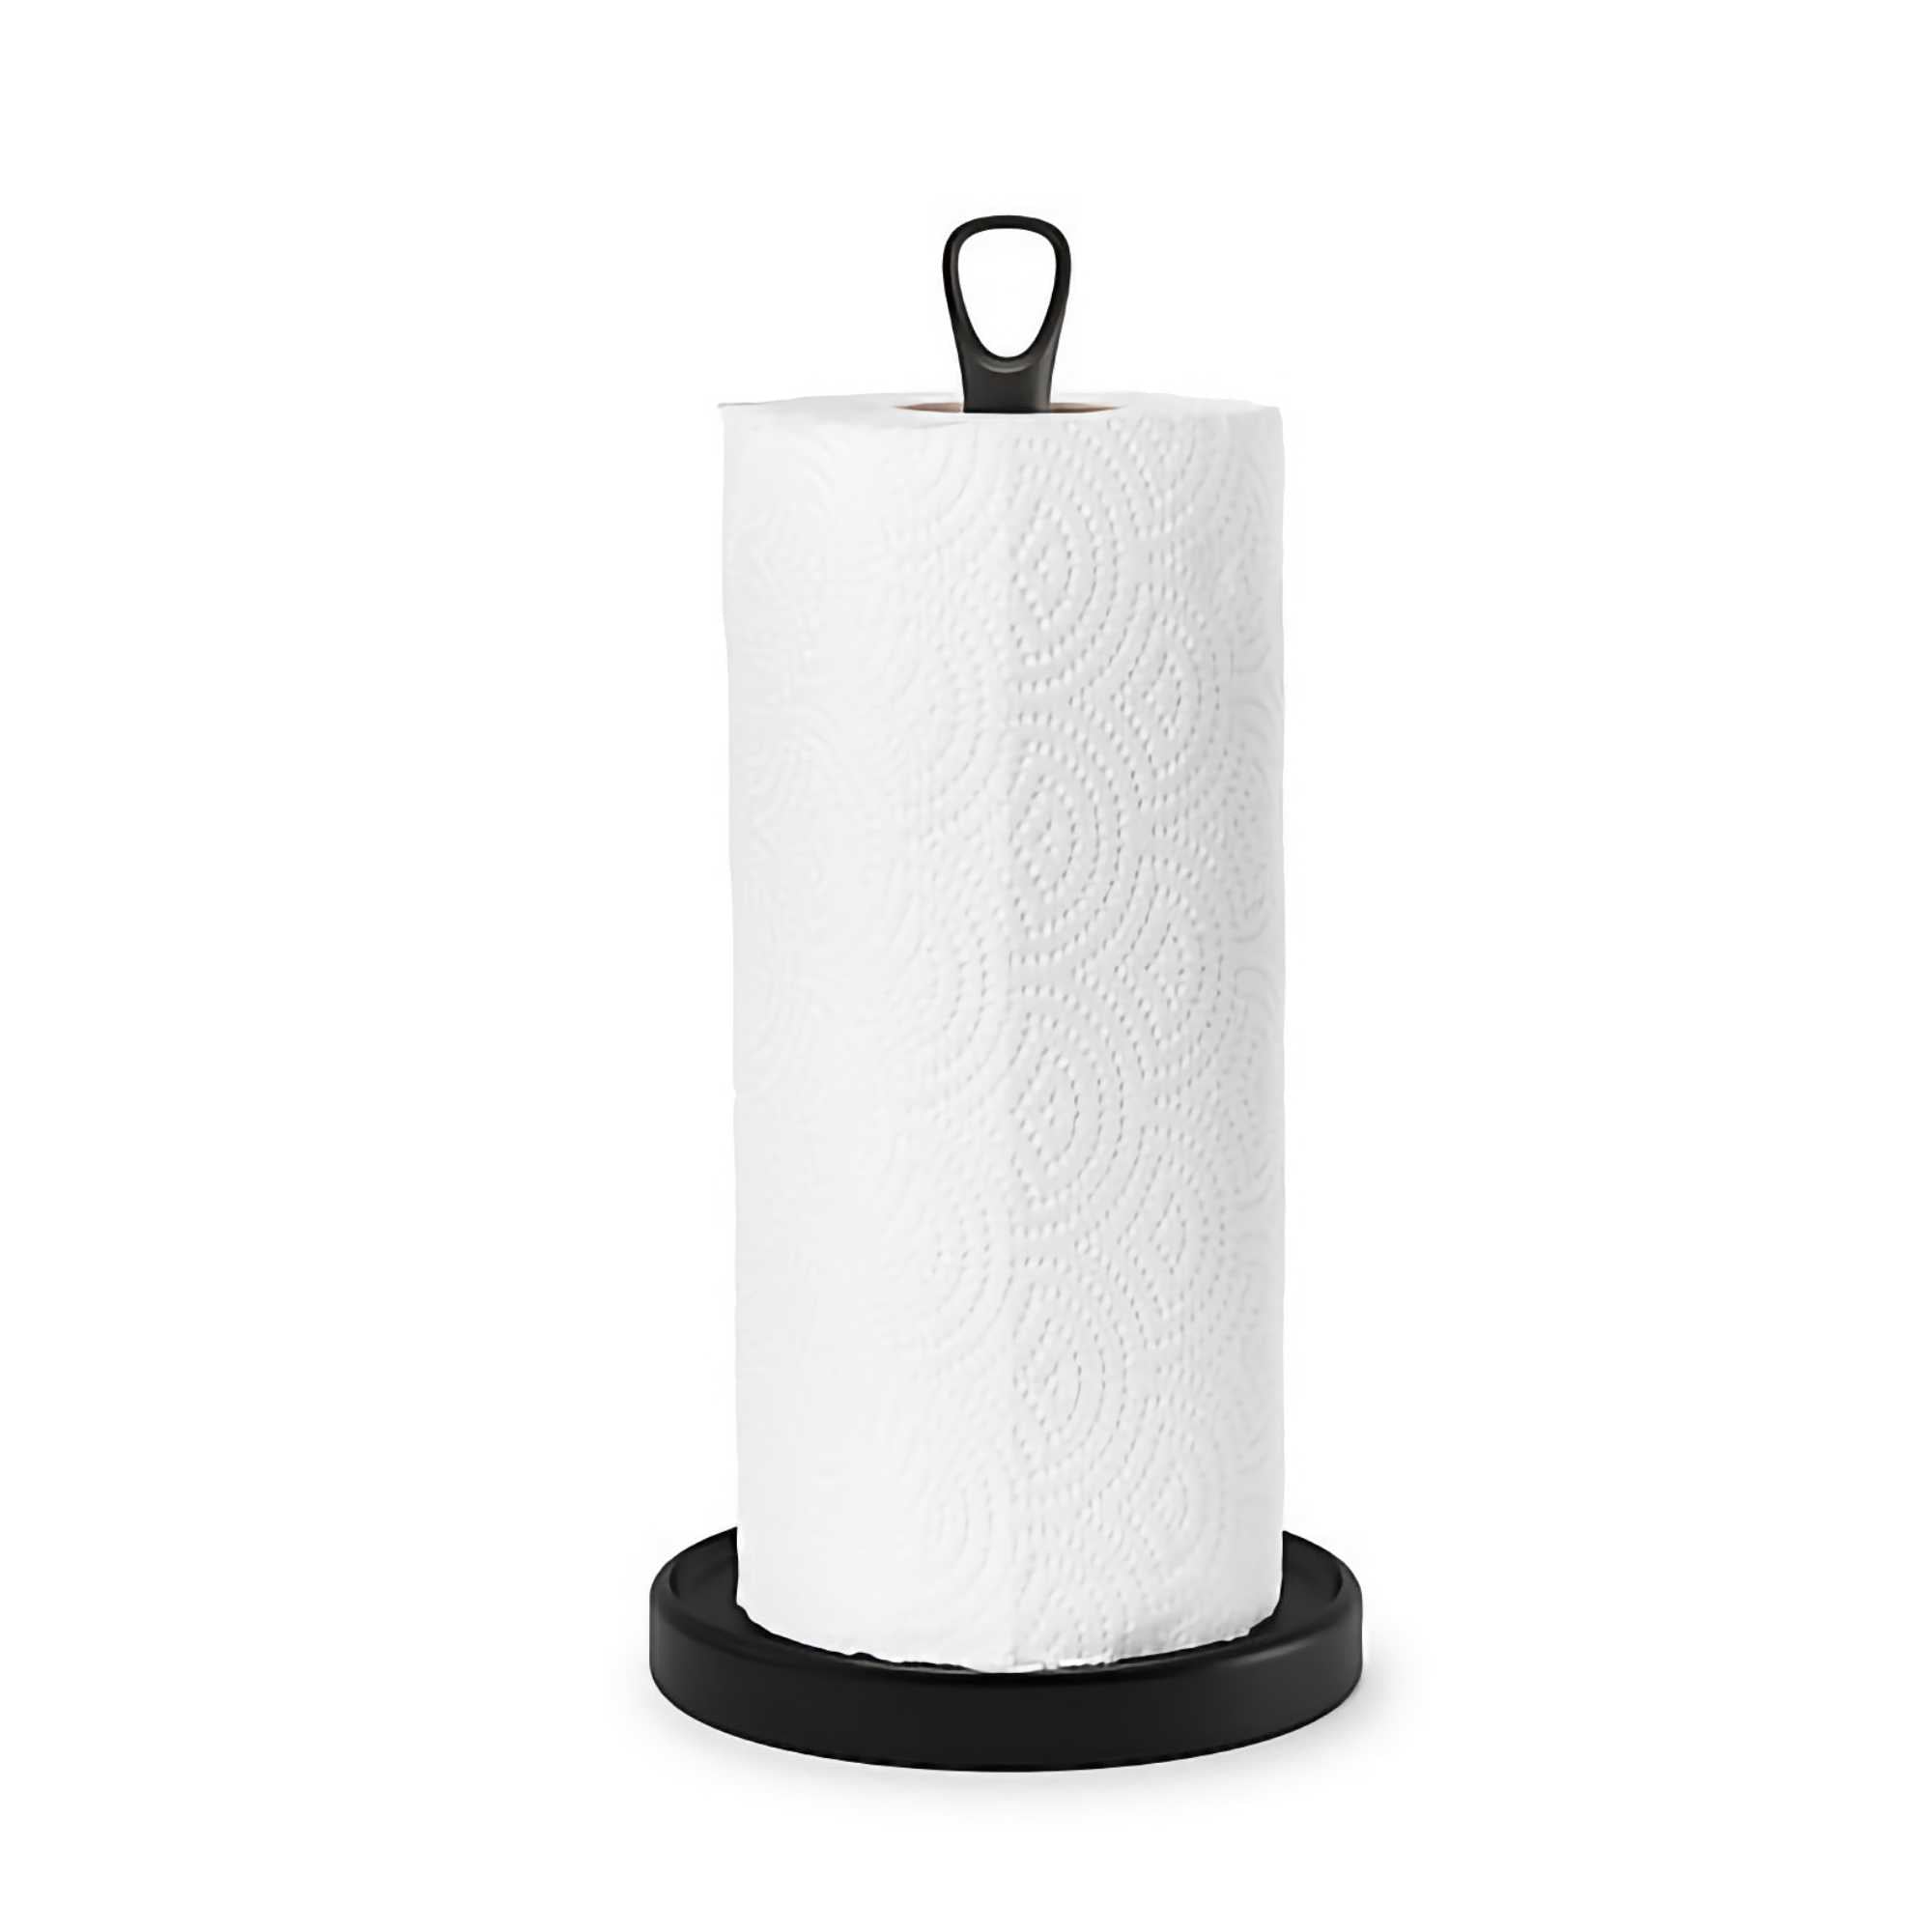 Umbra Squire Multi Use Paper Towel Holder - Black